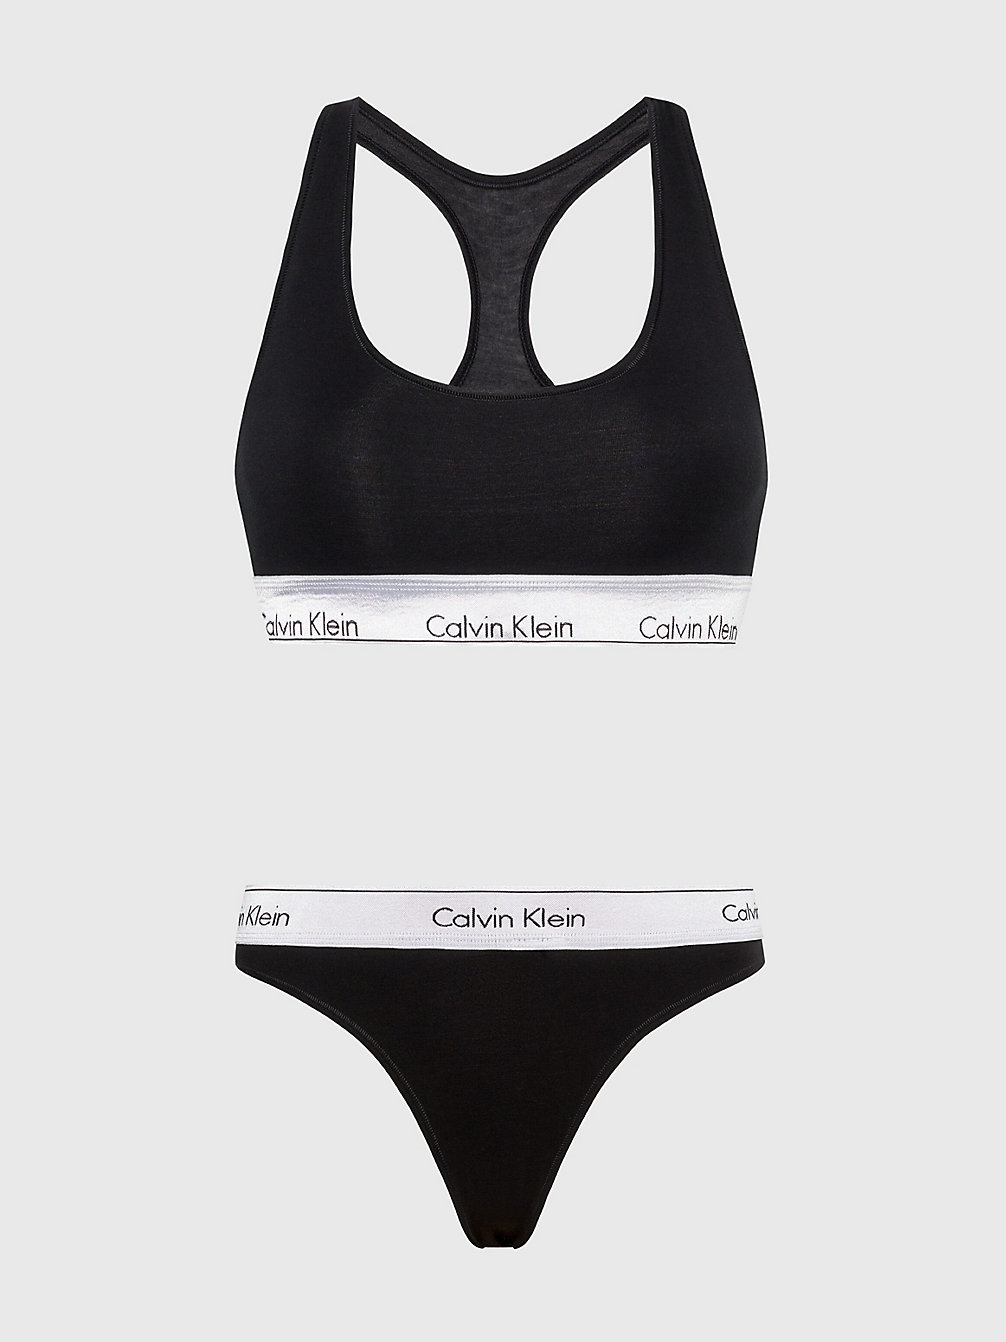 Set Brassière E Perizoma - Modern Cotton > BLACK/SILVER > undefined donna > Calvin Klein